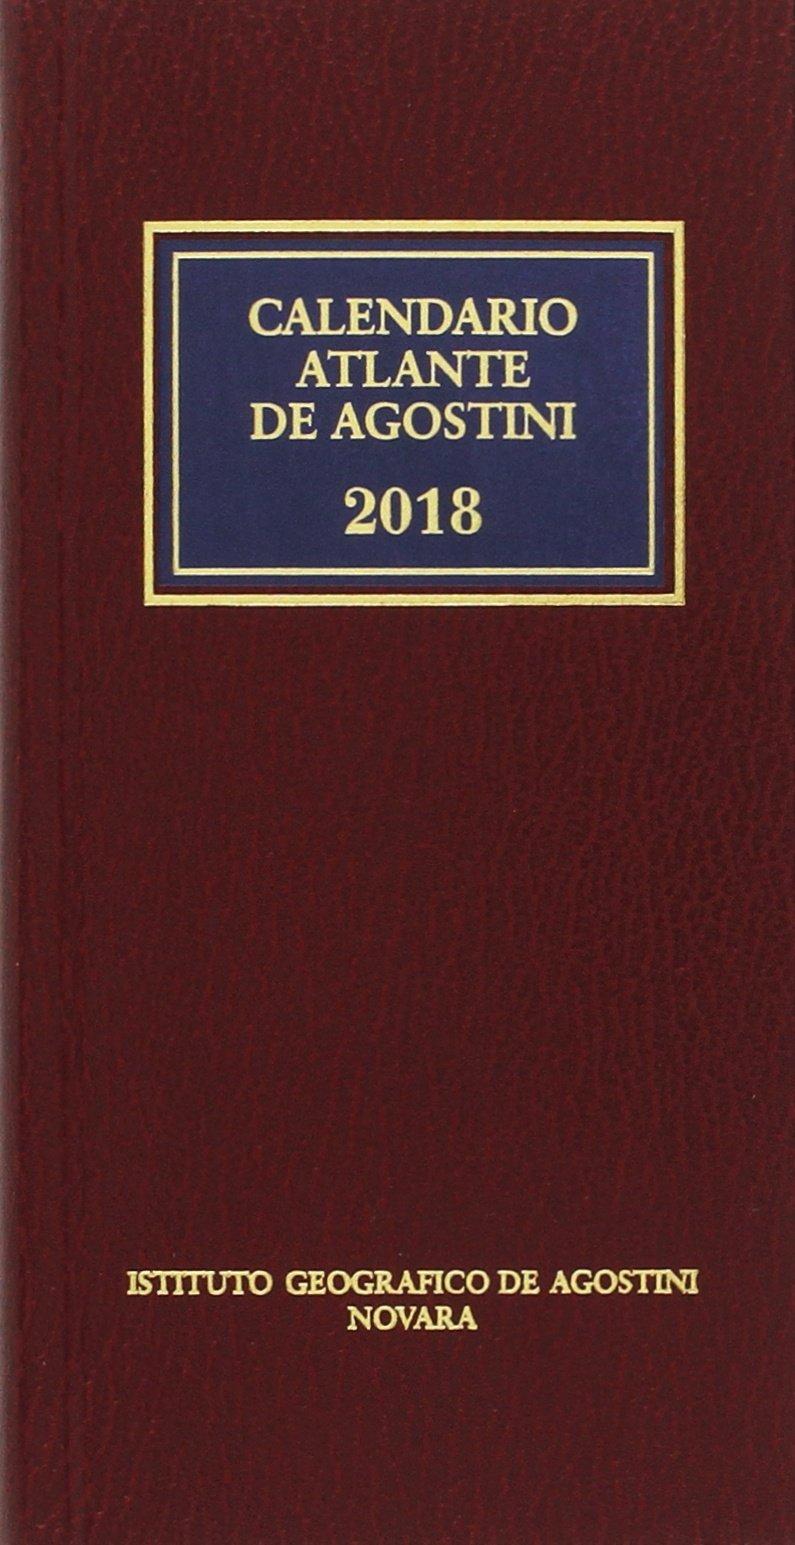 it/dp/b07335mwwp/ Calendario atlante De Agostini 2018 L'annuario geostatistico, lo strumento piã¹ autorevole per la conoscenza della geopolitica mondiale.